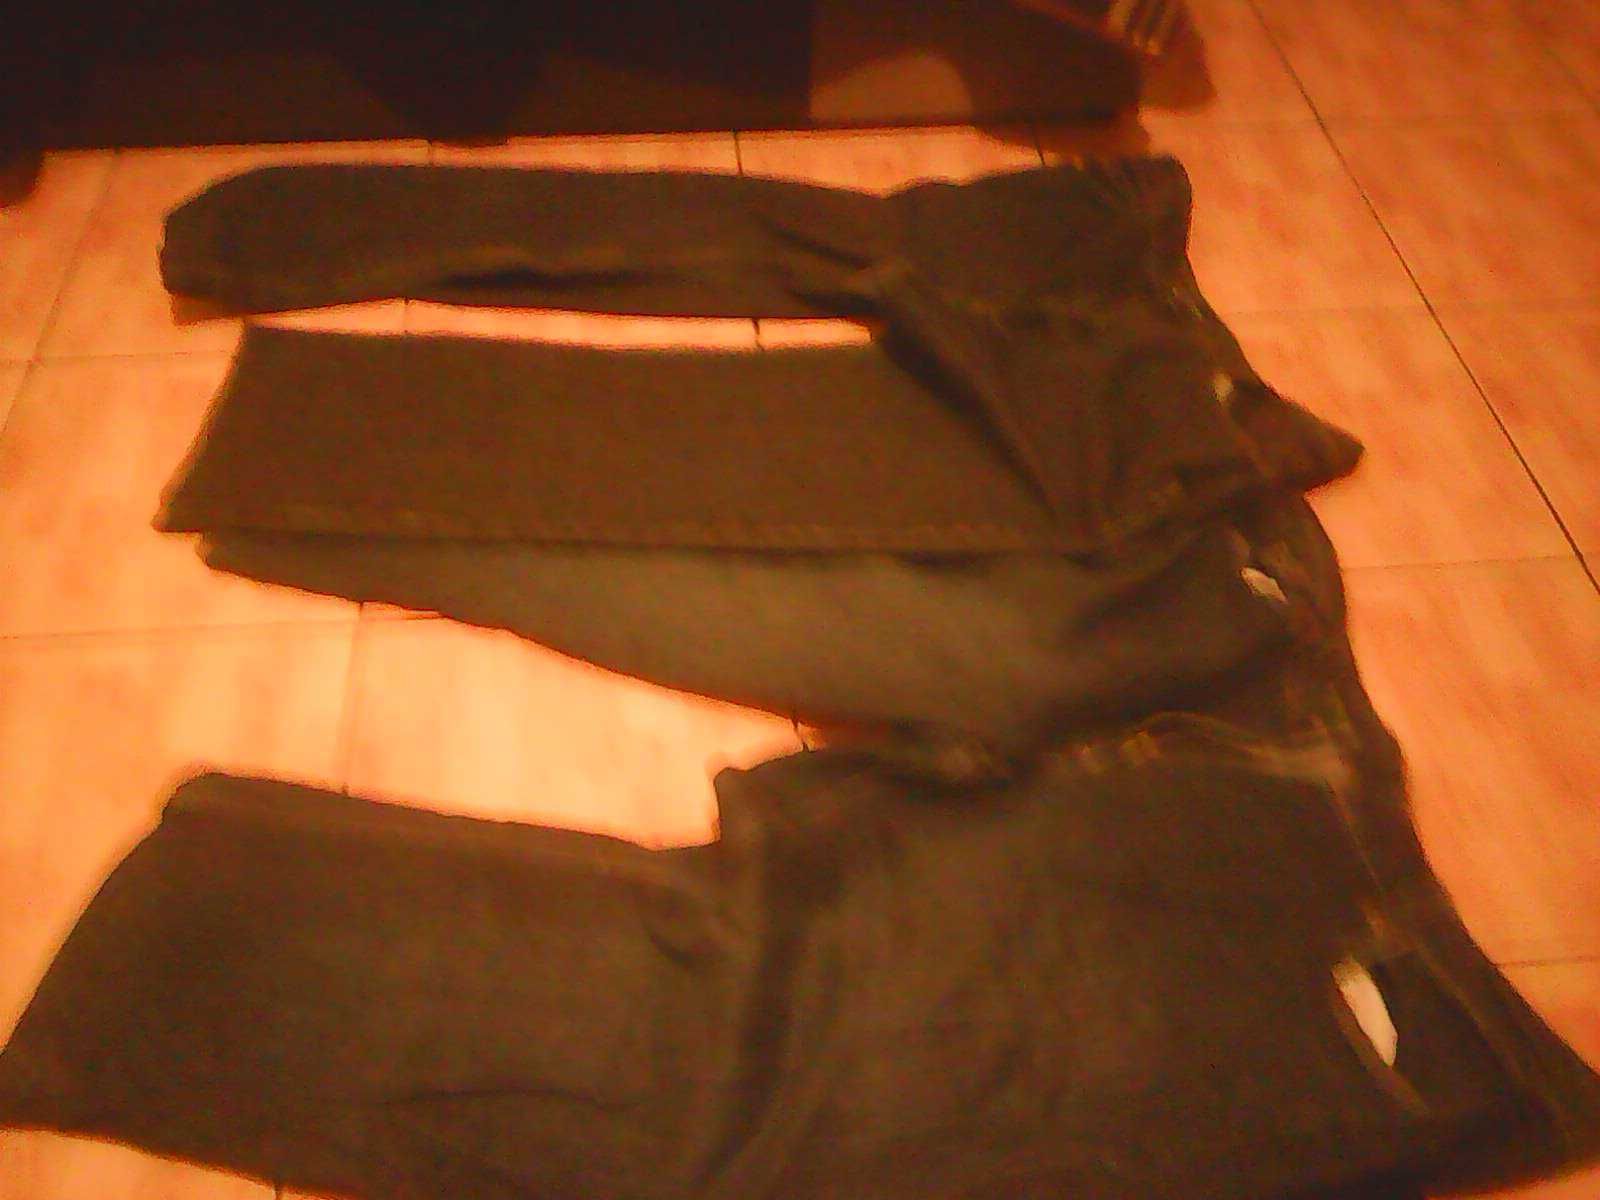 spodnie dresowe i jeans na pytac o rozmiar jak nowe ale uzywane tanio